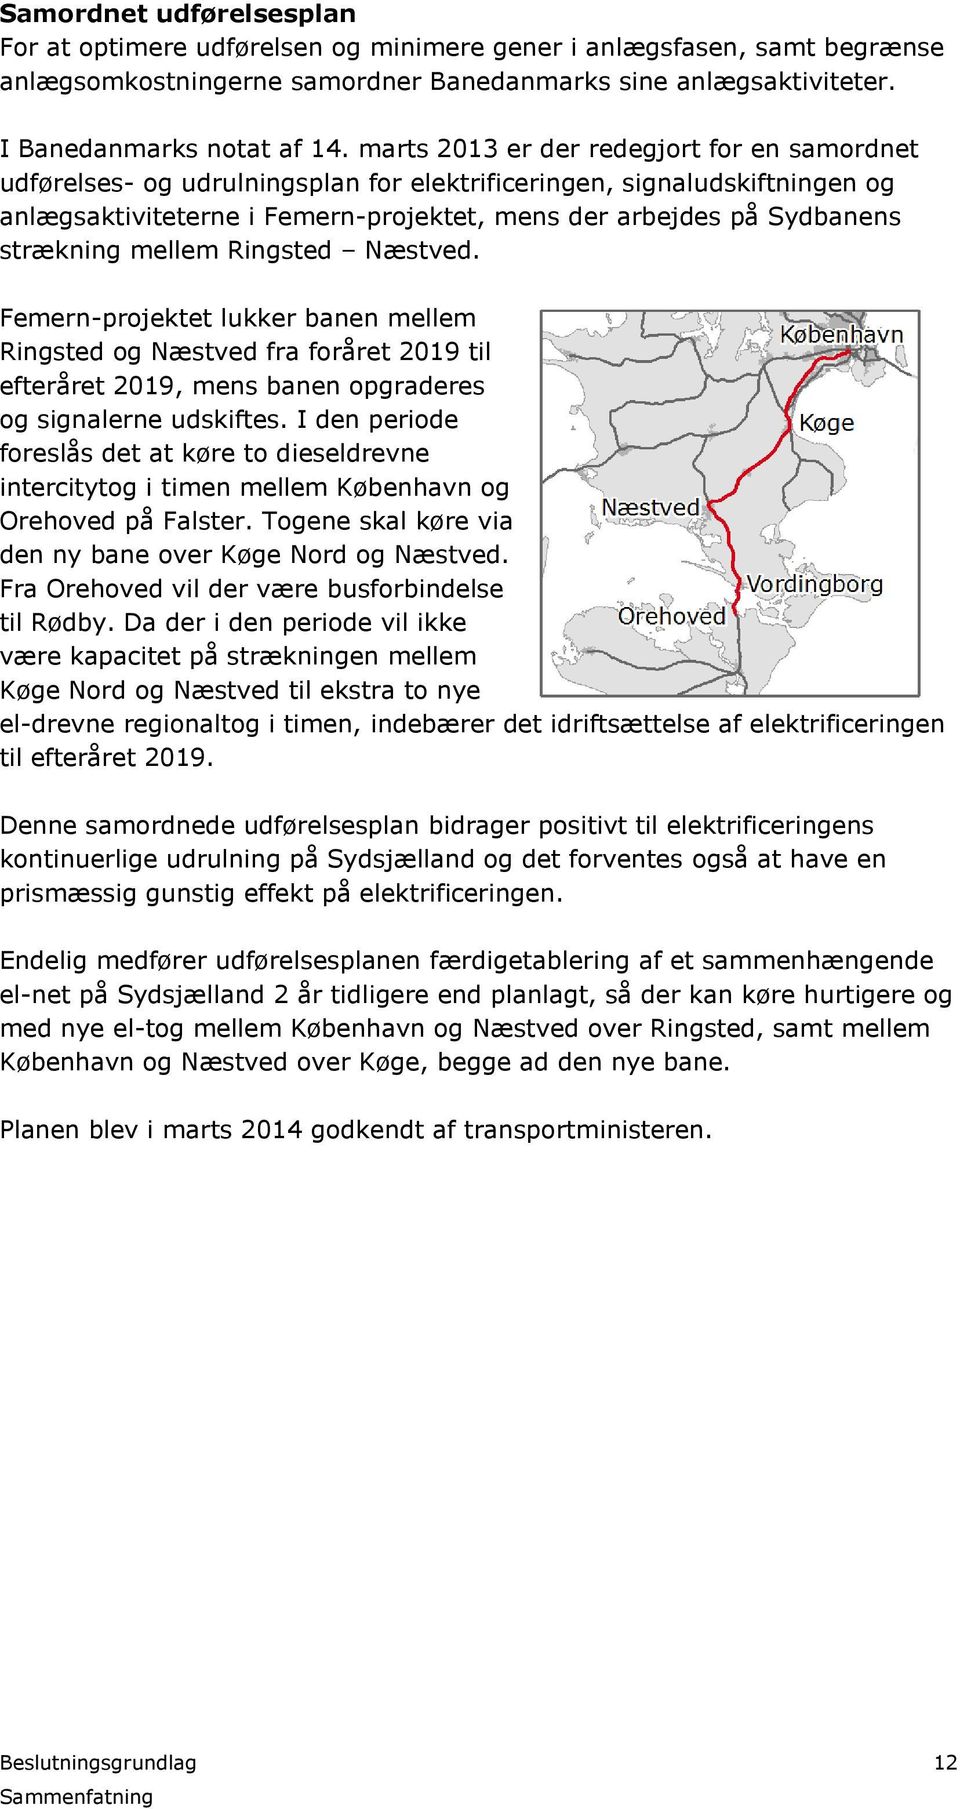 strækning mellem Ringsted Næstved. Femern-projektet lukker banen mellem Ringsted og Næstved fra foråret 2019 til efteråret 2019, mens banen opgraderes og signalerne udskiftes.